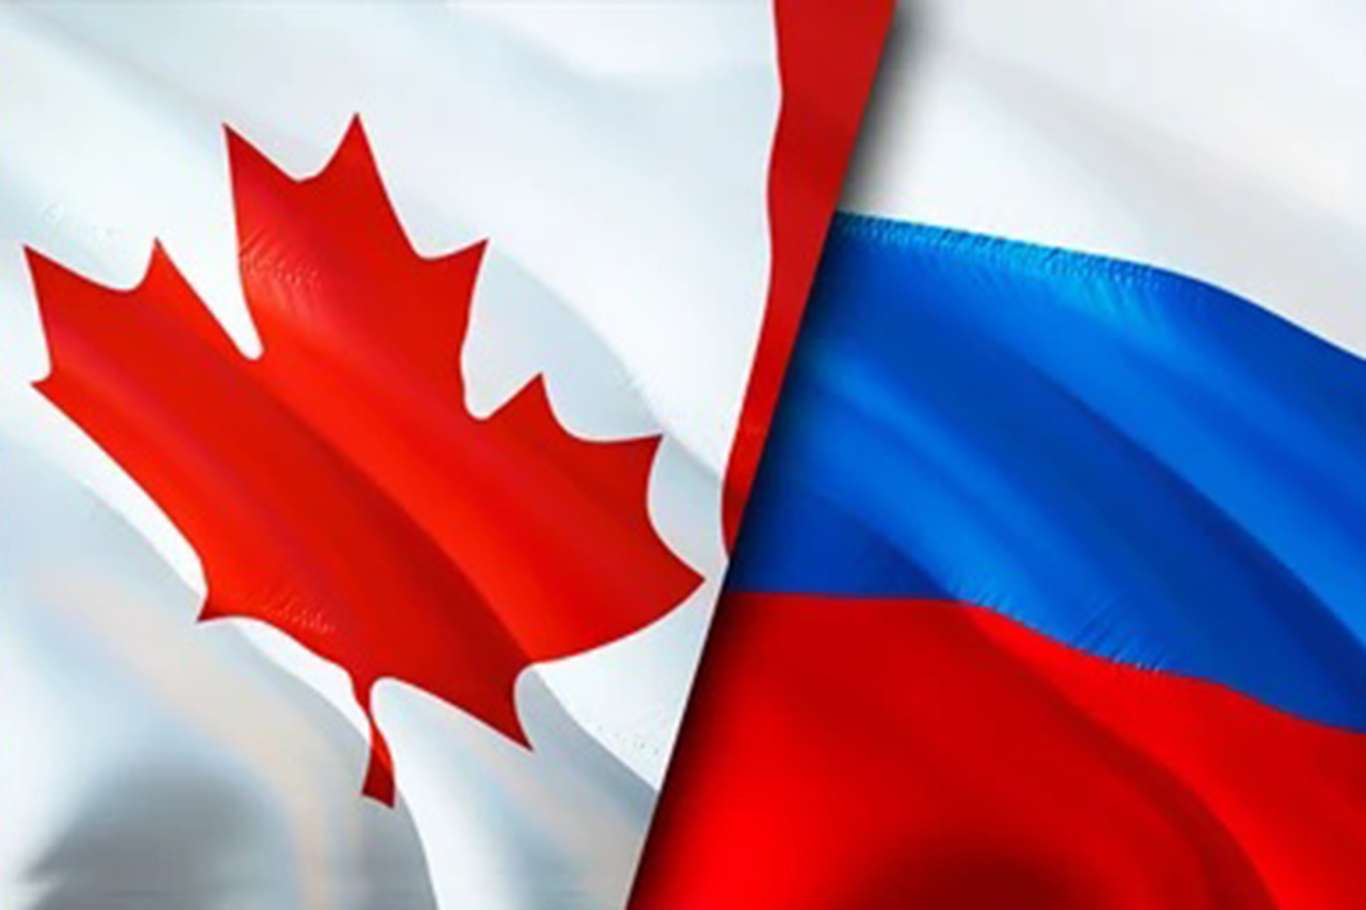 Rusya'dan 62 Kanadalıya yaptırım kararı